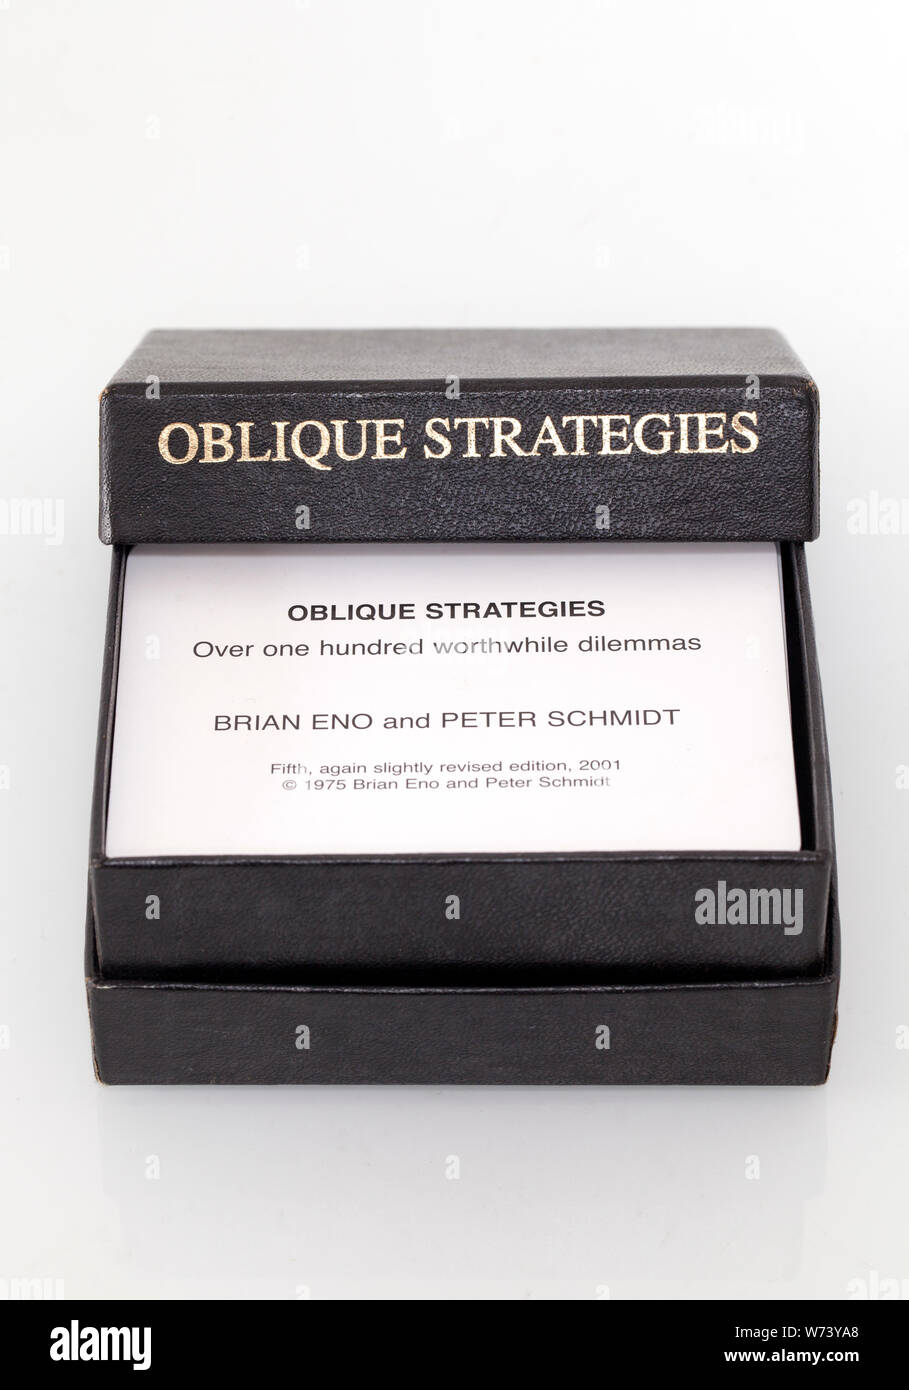 Strategie oblique giocando a carte da Brian Eno e Peter Schmidt - oltre un centinaio di dilemmi vale la pena Foto Stock